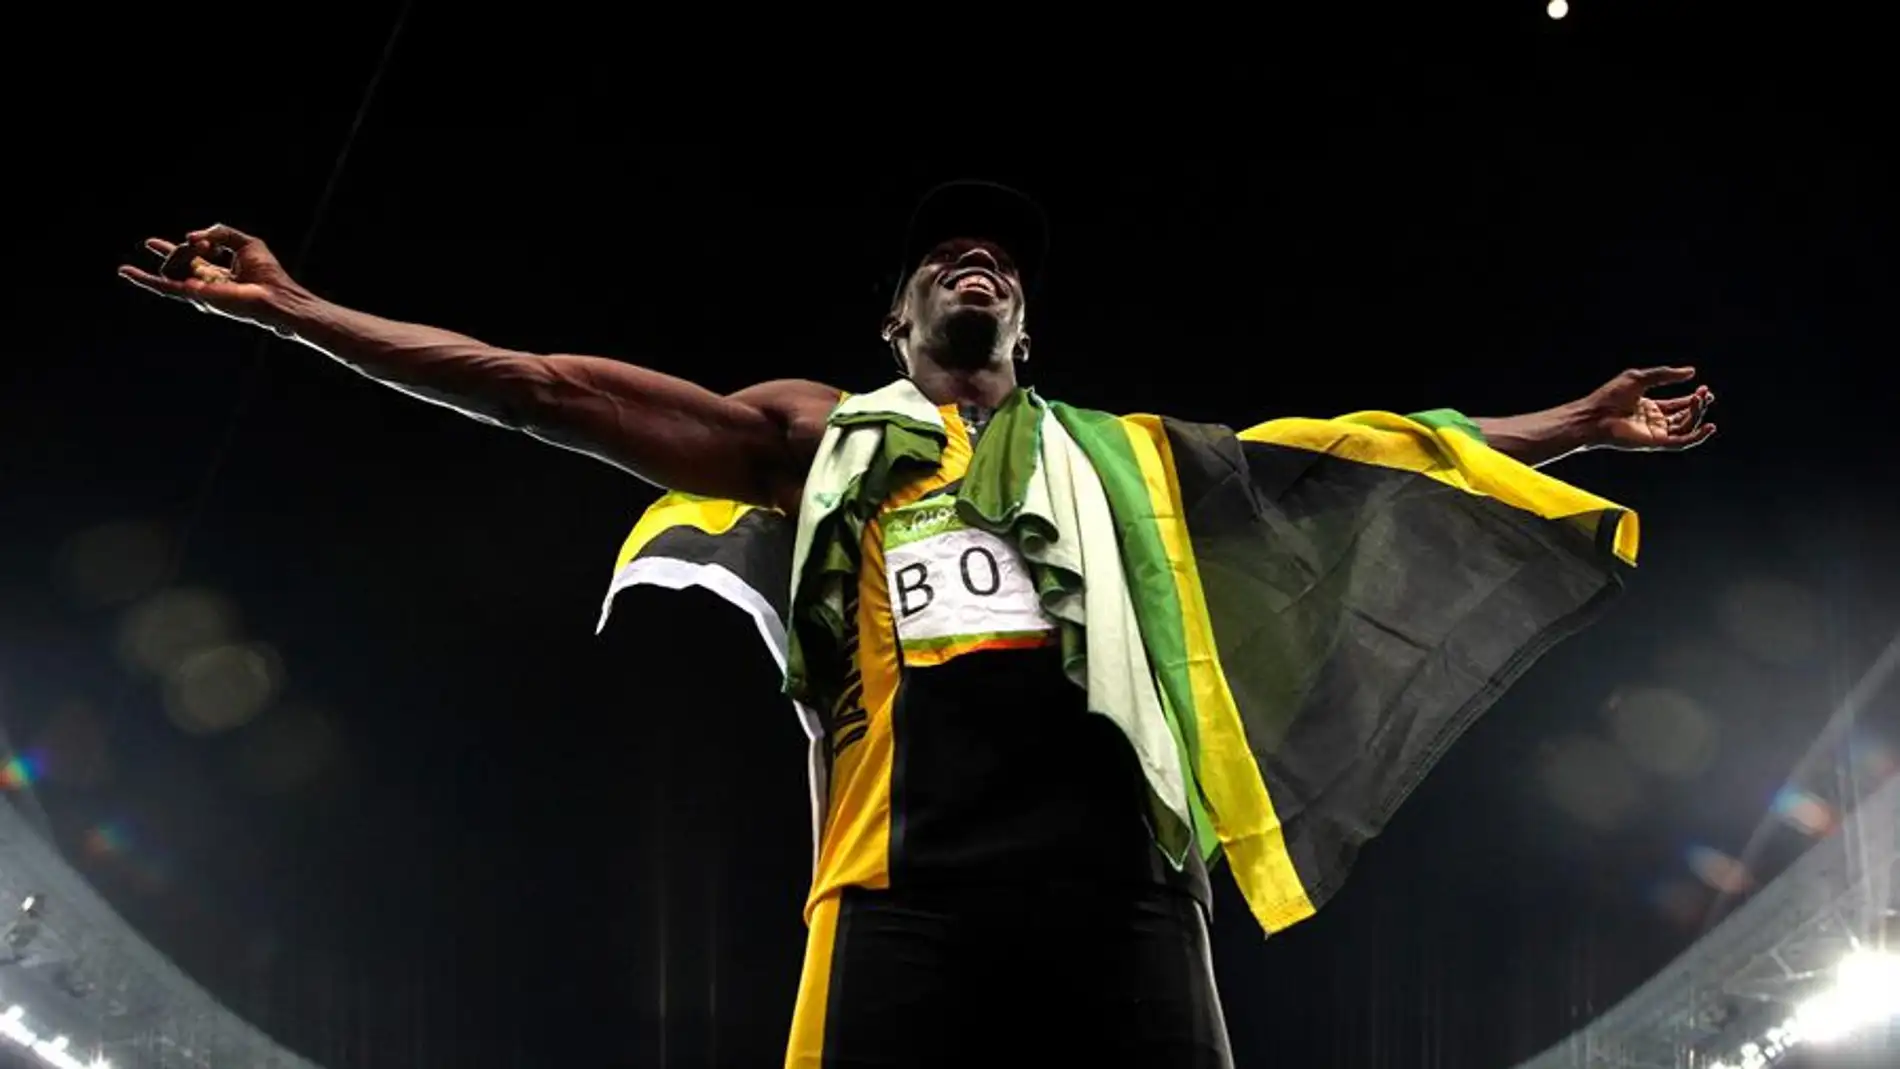 Se busca sucesor para Usain Bolt: Los candidatos a ser el nuevo rey de la velocidad